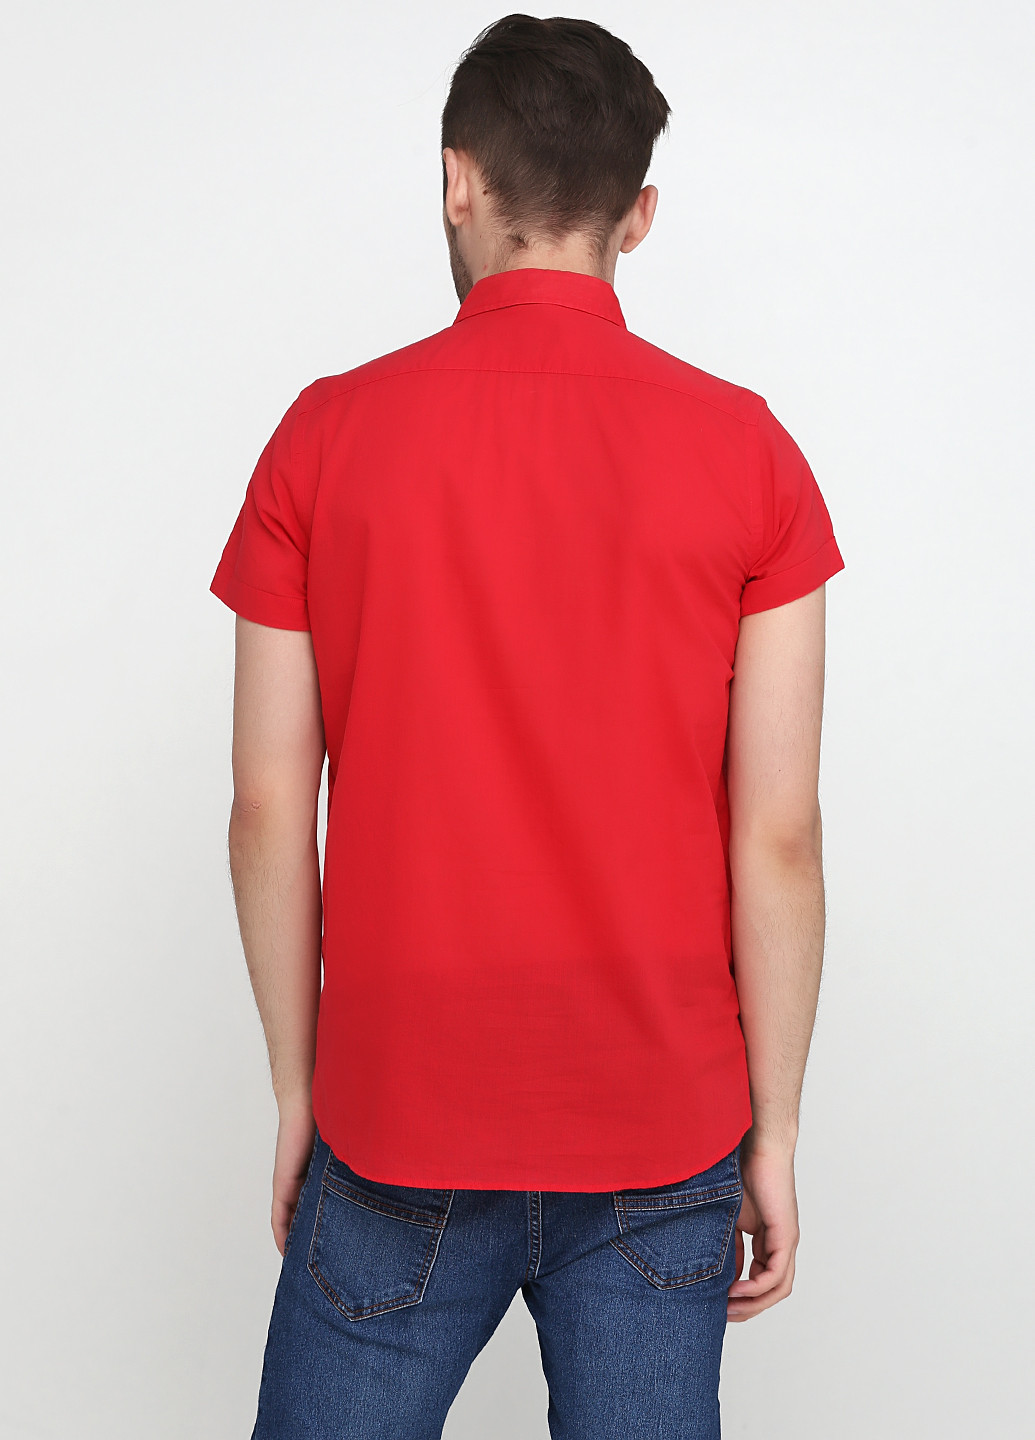 Красная кэжуал рубашка однотонная Zara с коротким рукавом